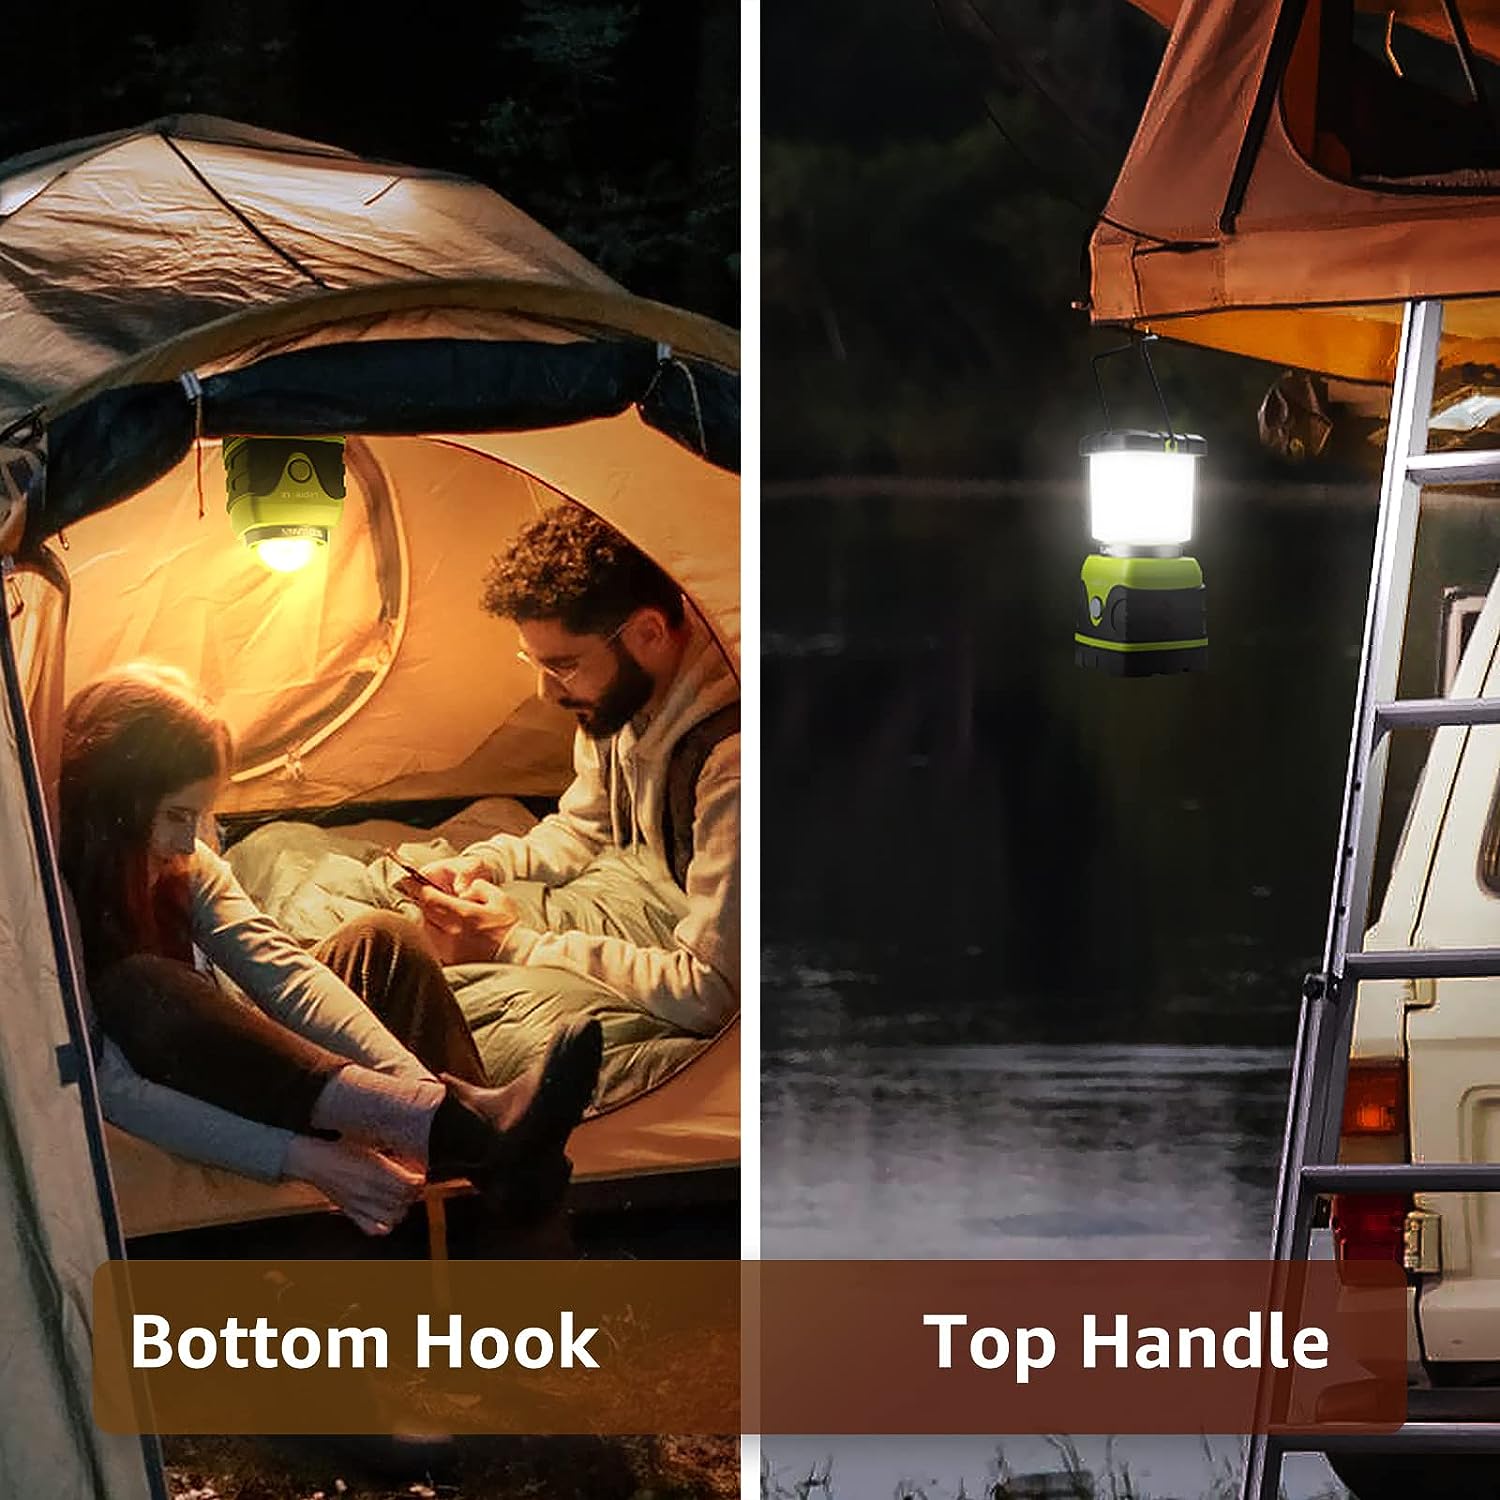 Lighting EVER - Linterna LED de camping, 4 modos de luz, perfecta para salidas outdoor